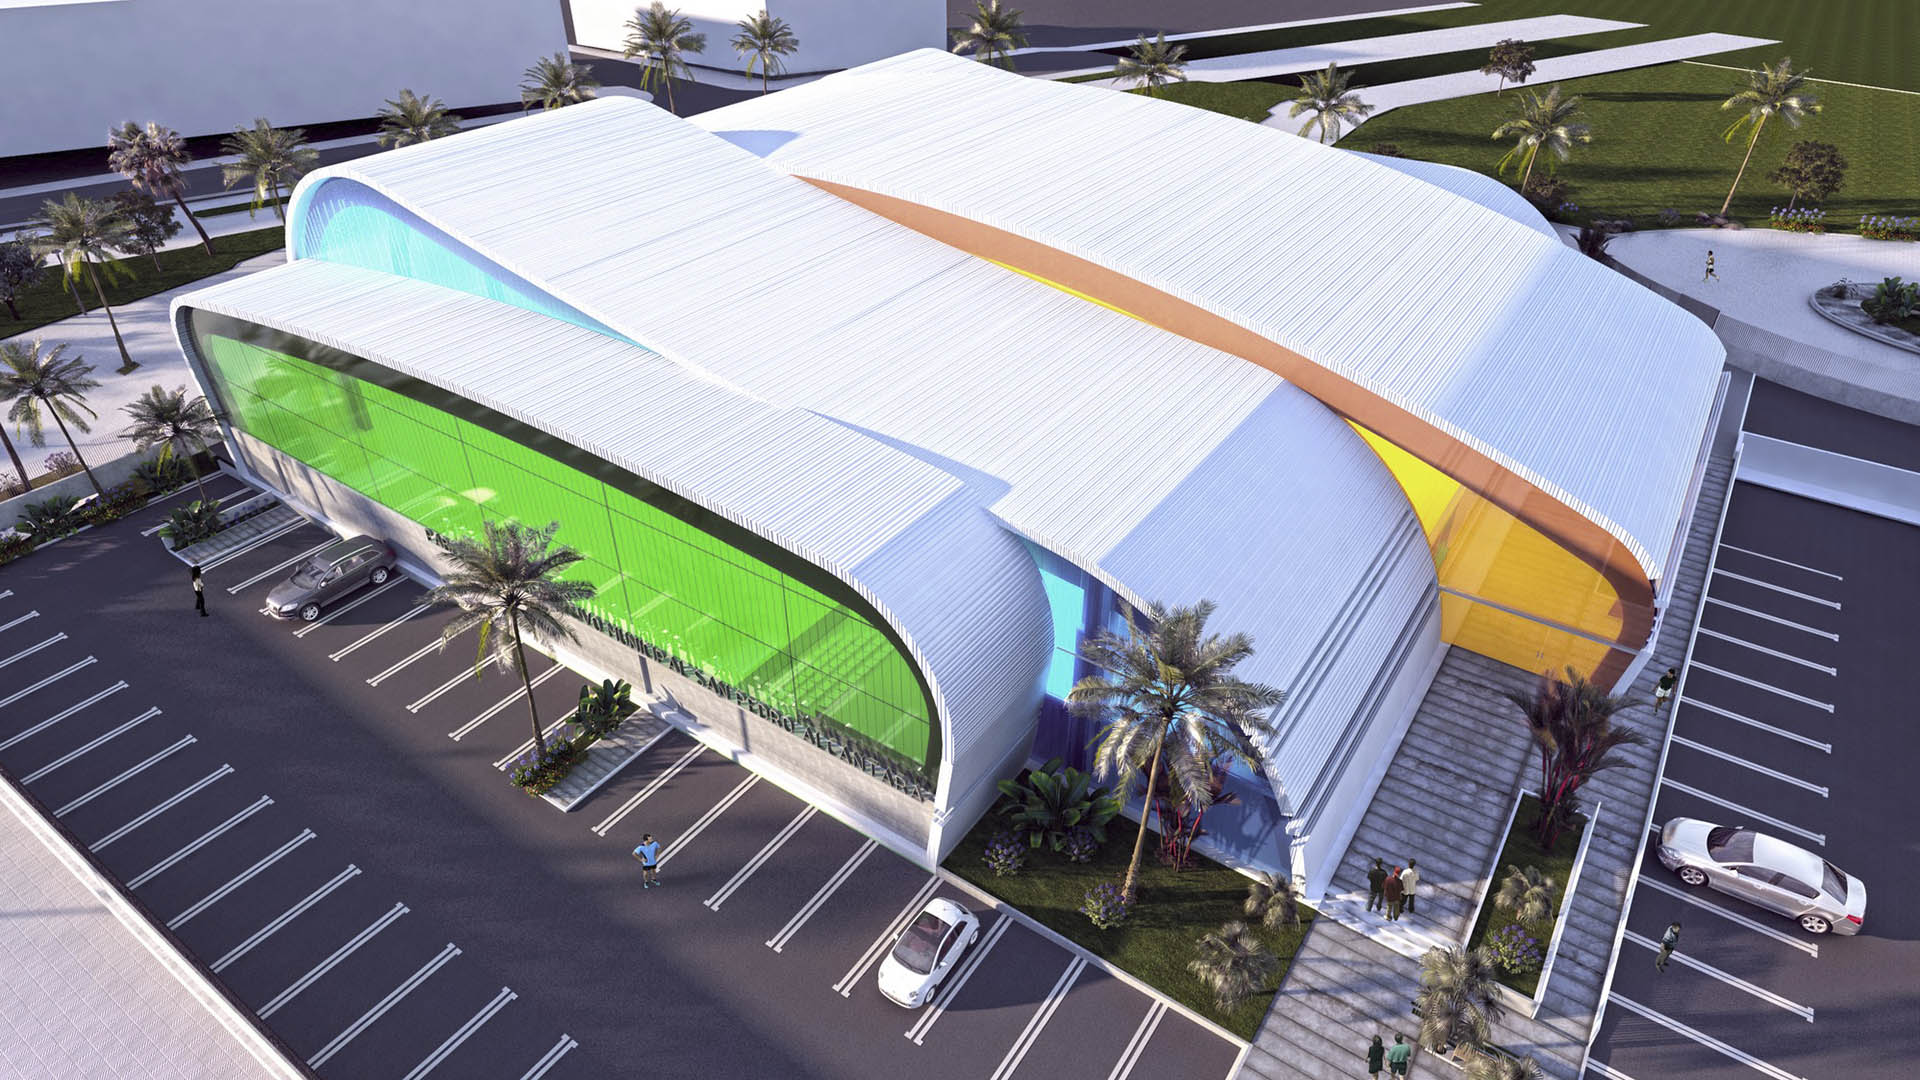 Sale a concurso por casi 5,7 millones de euros la obra del nuevo pabellón polideportivo de San Pedro Alcántara